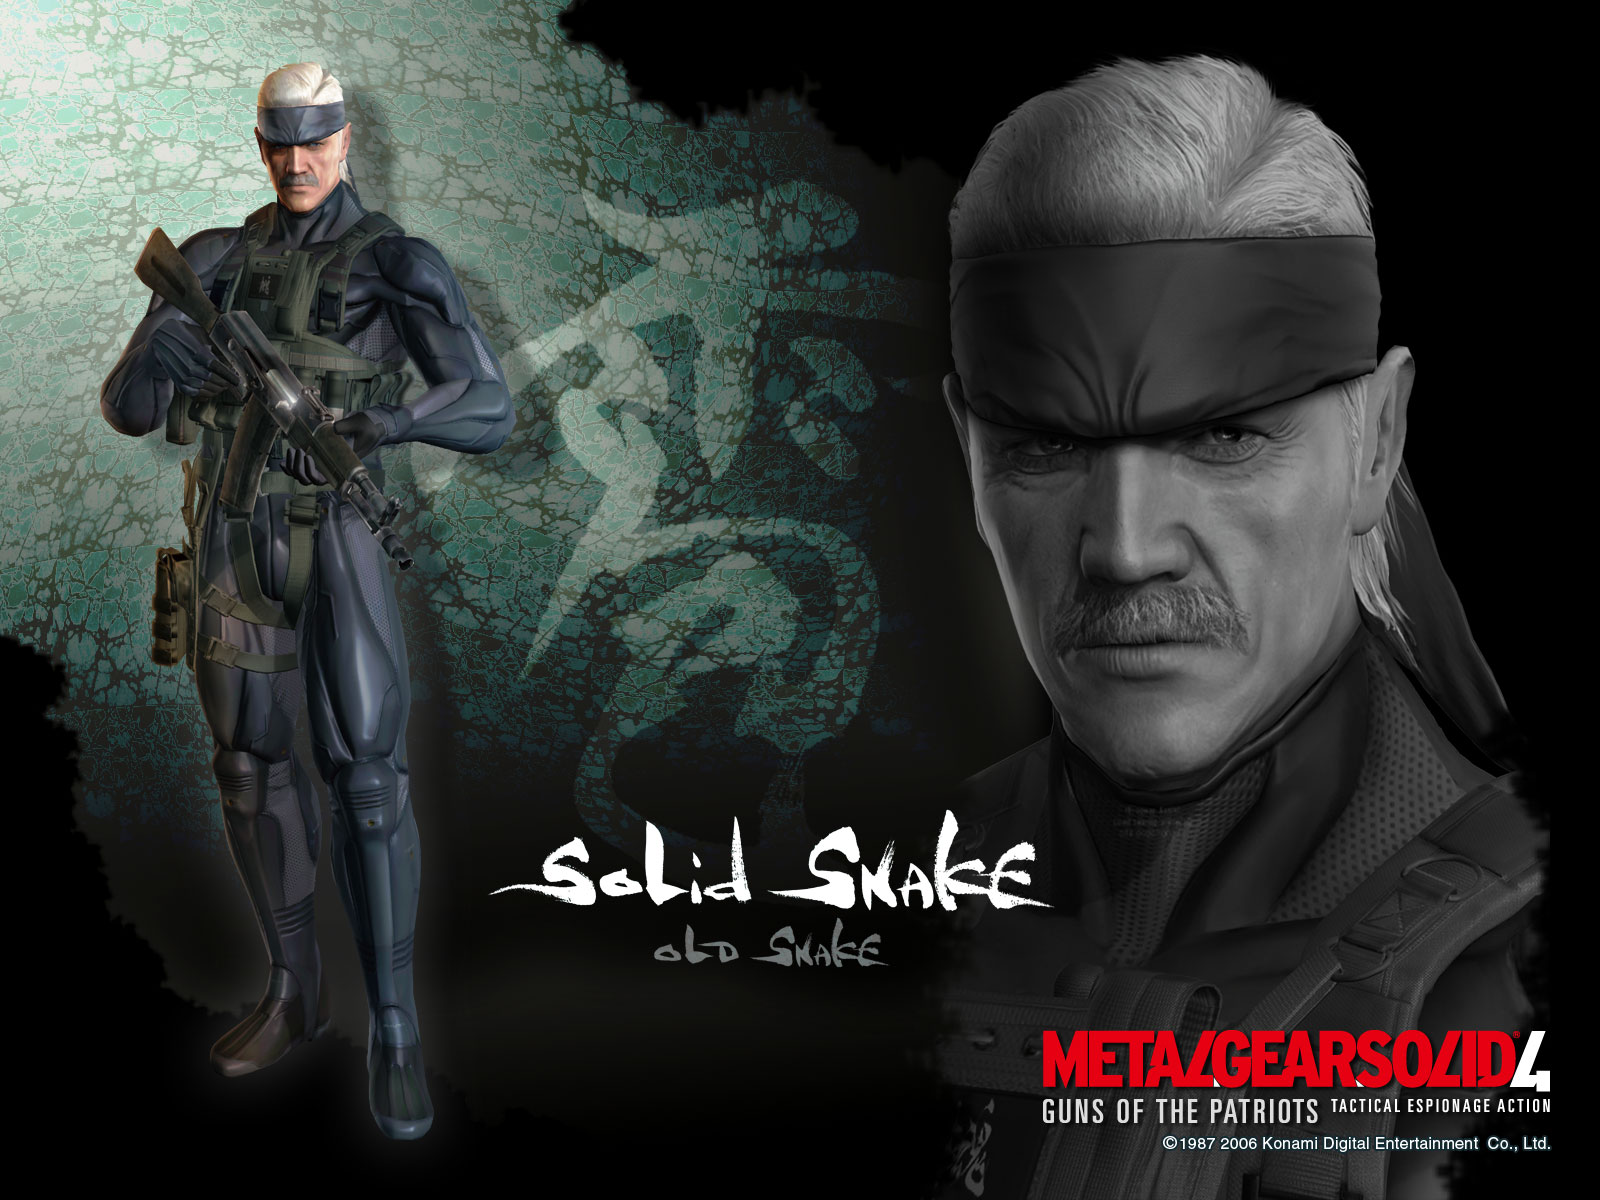 Solid Snake Metal Gear Solid 4 wallpaper | www.Games80.Net ...